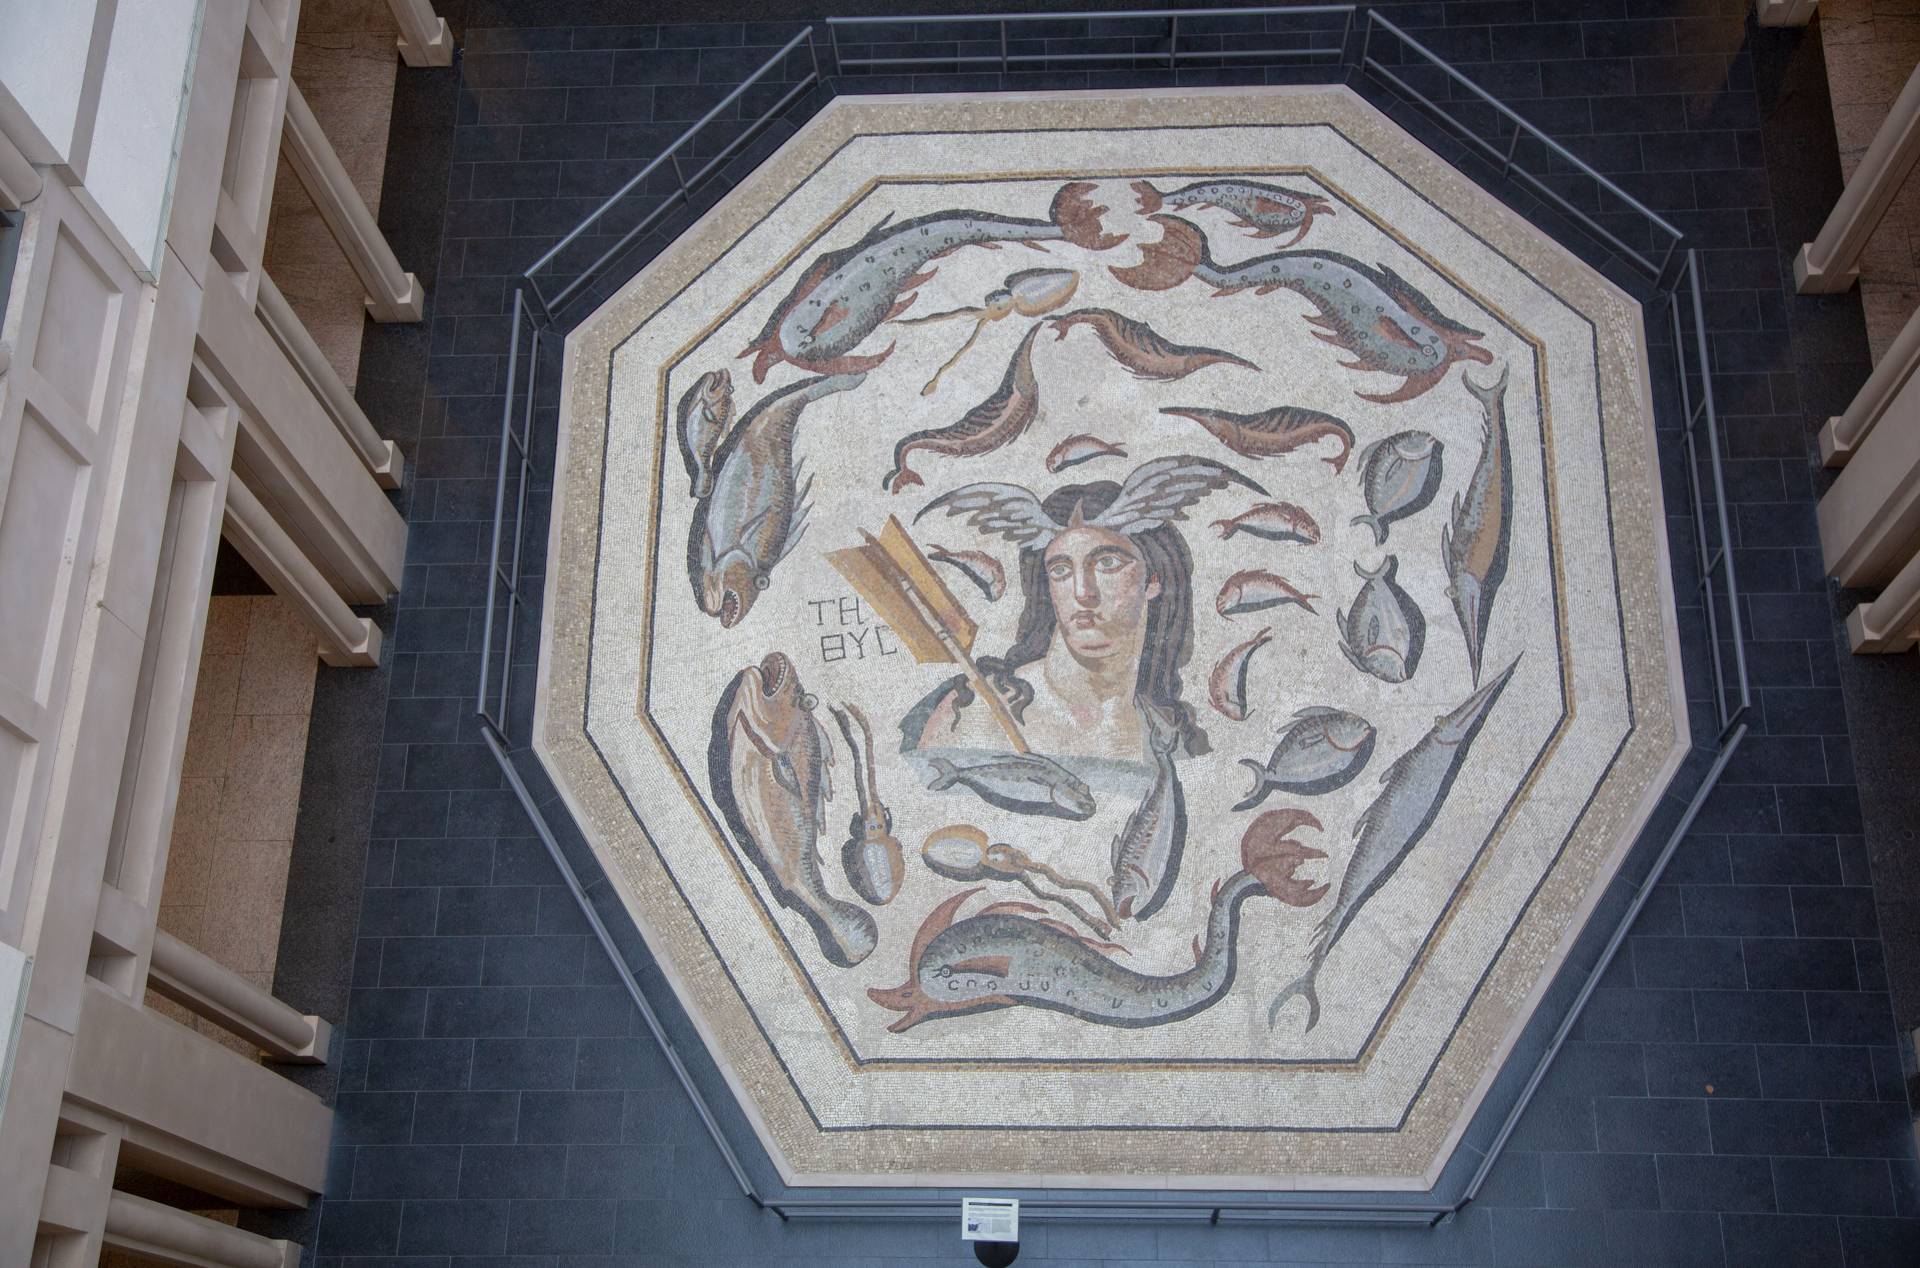 Aerial view of large mosaic at Harvard museum